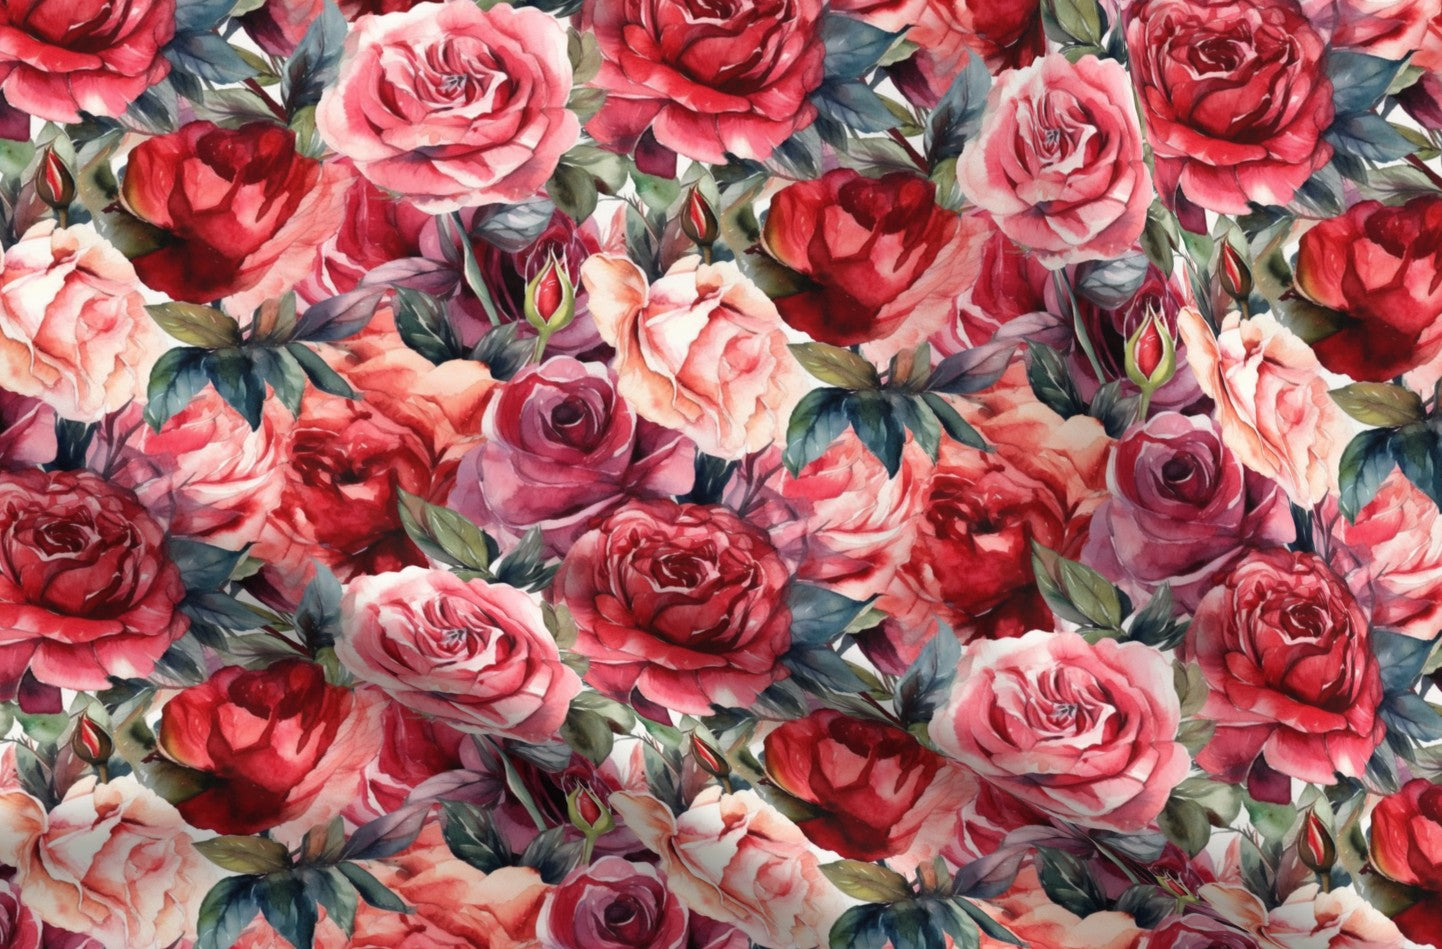 Vivid Watercolor Roses Printed Fabric by Studio Ten Design